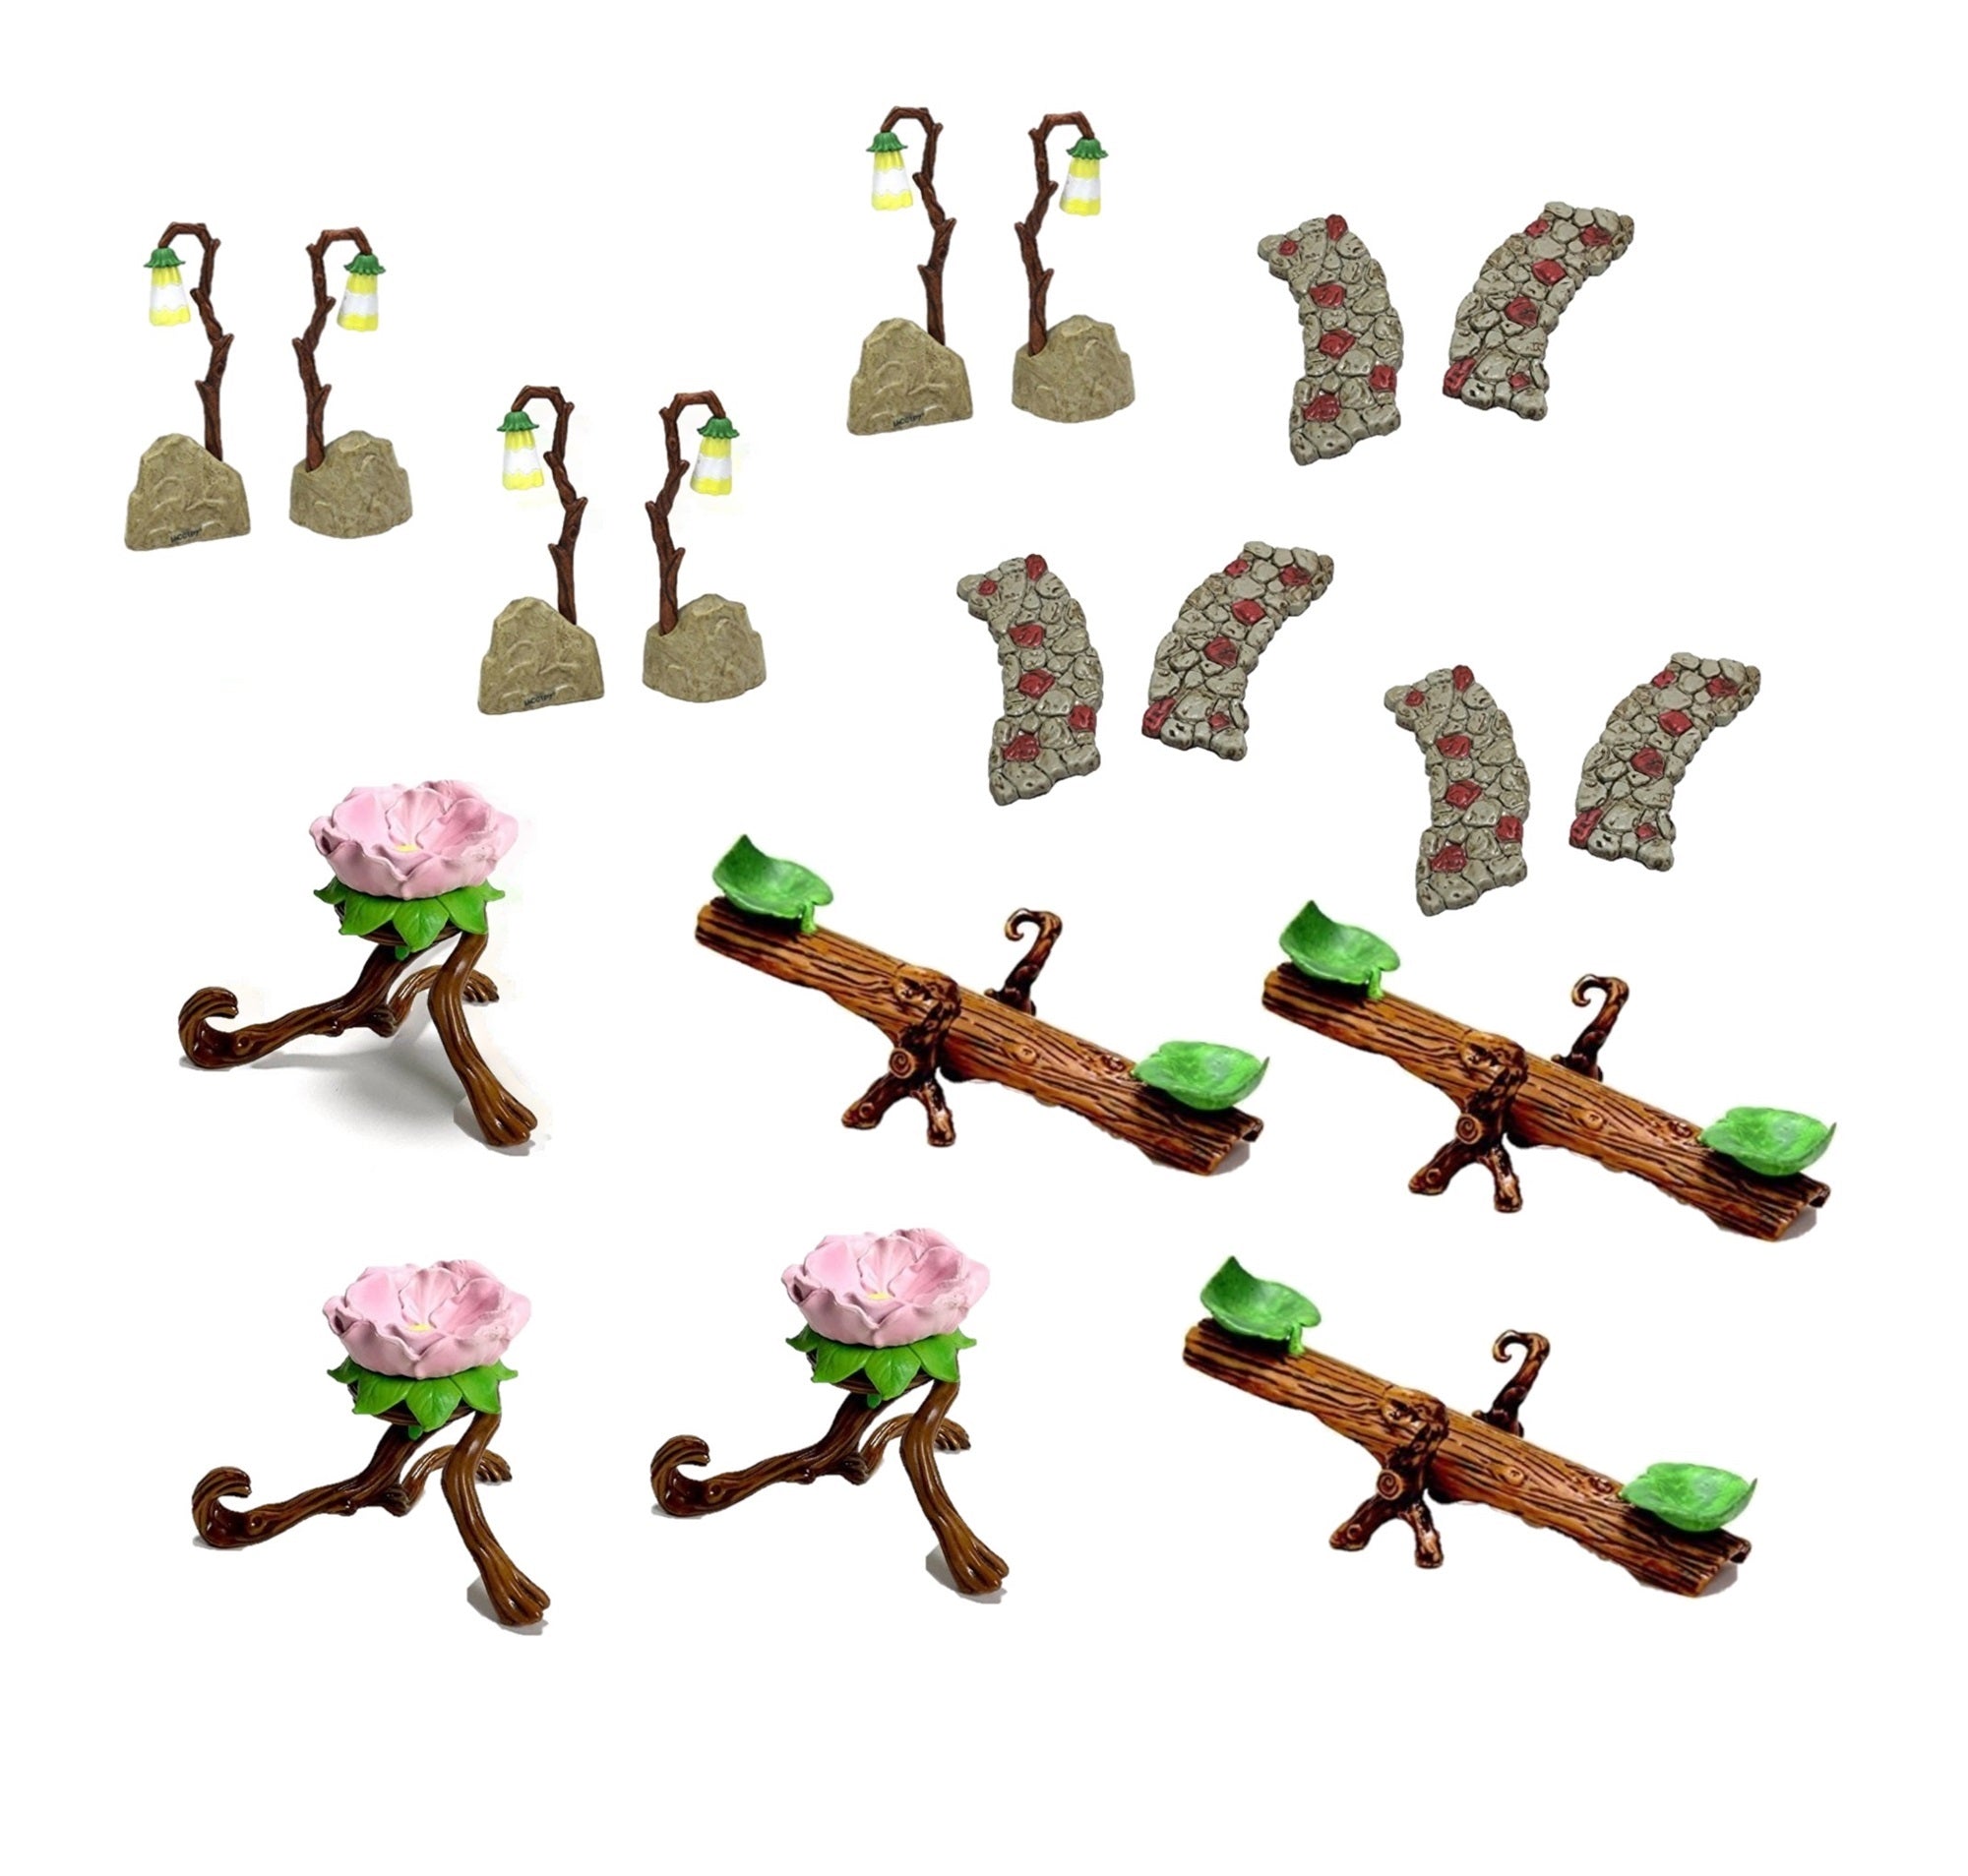 Flower Fairies Mixed Case Medium Accessories for Garden, Bulk (Pack of 12)